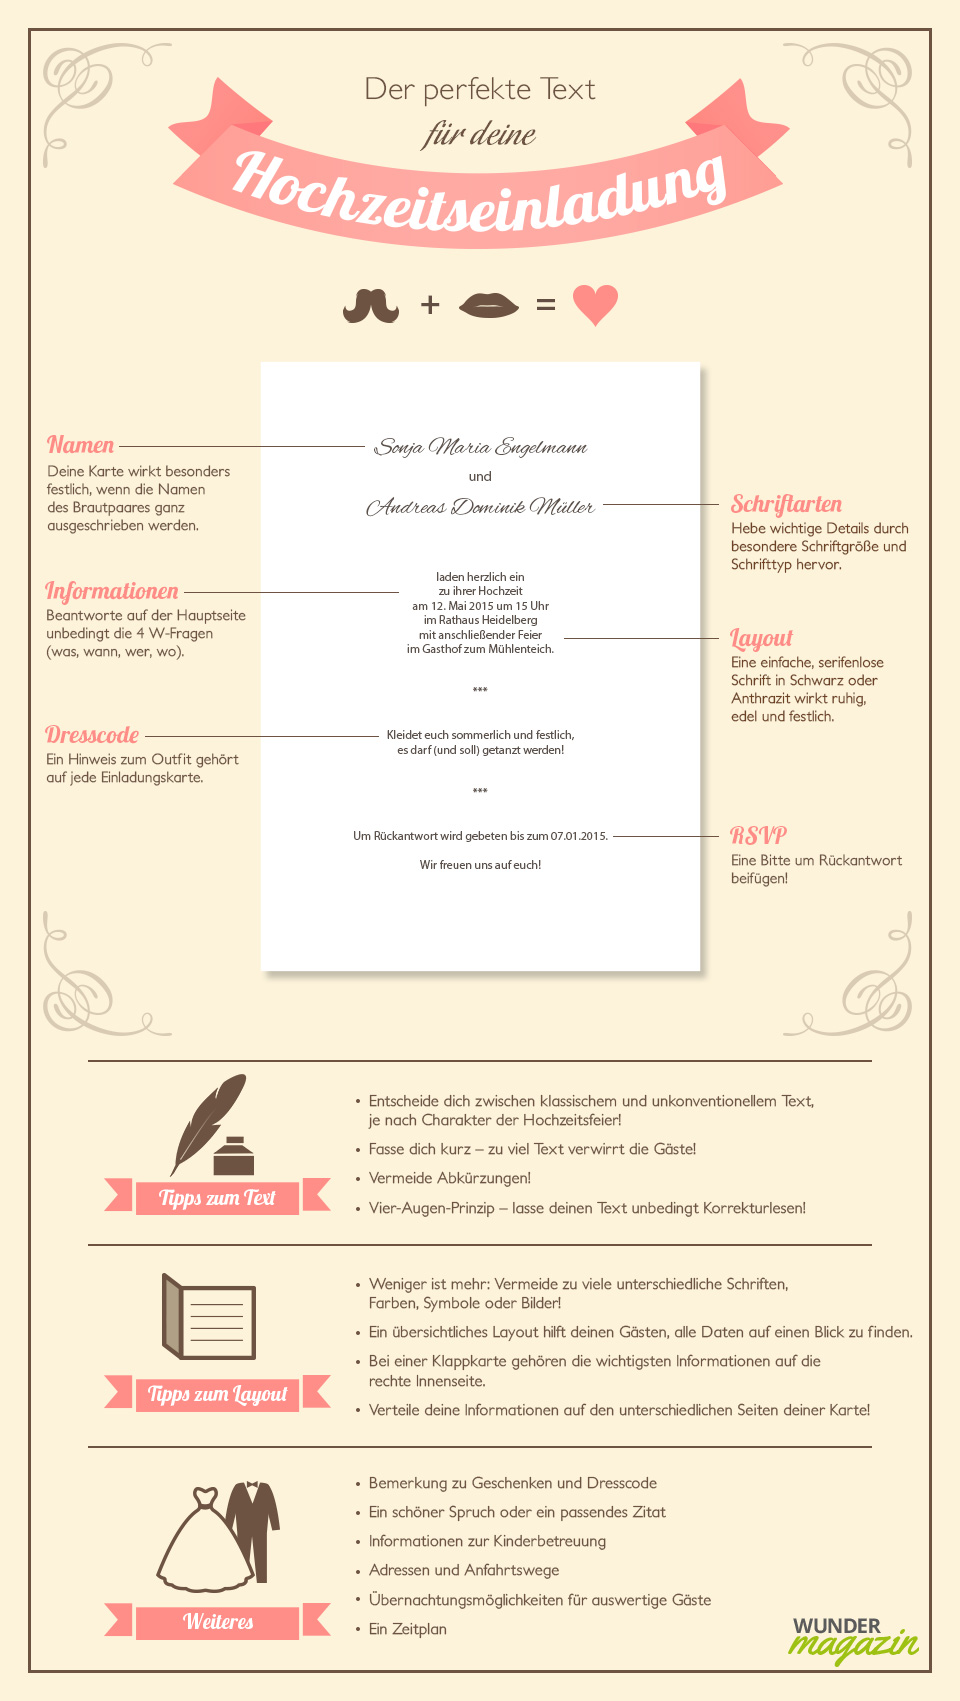 Infografik zu Hochzeitseinladung Text